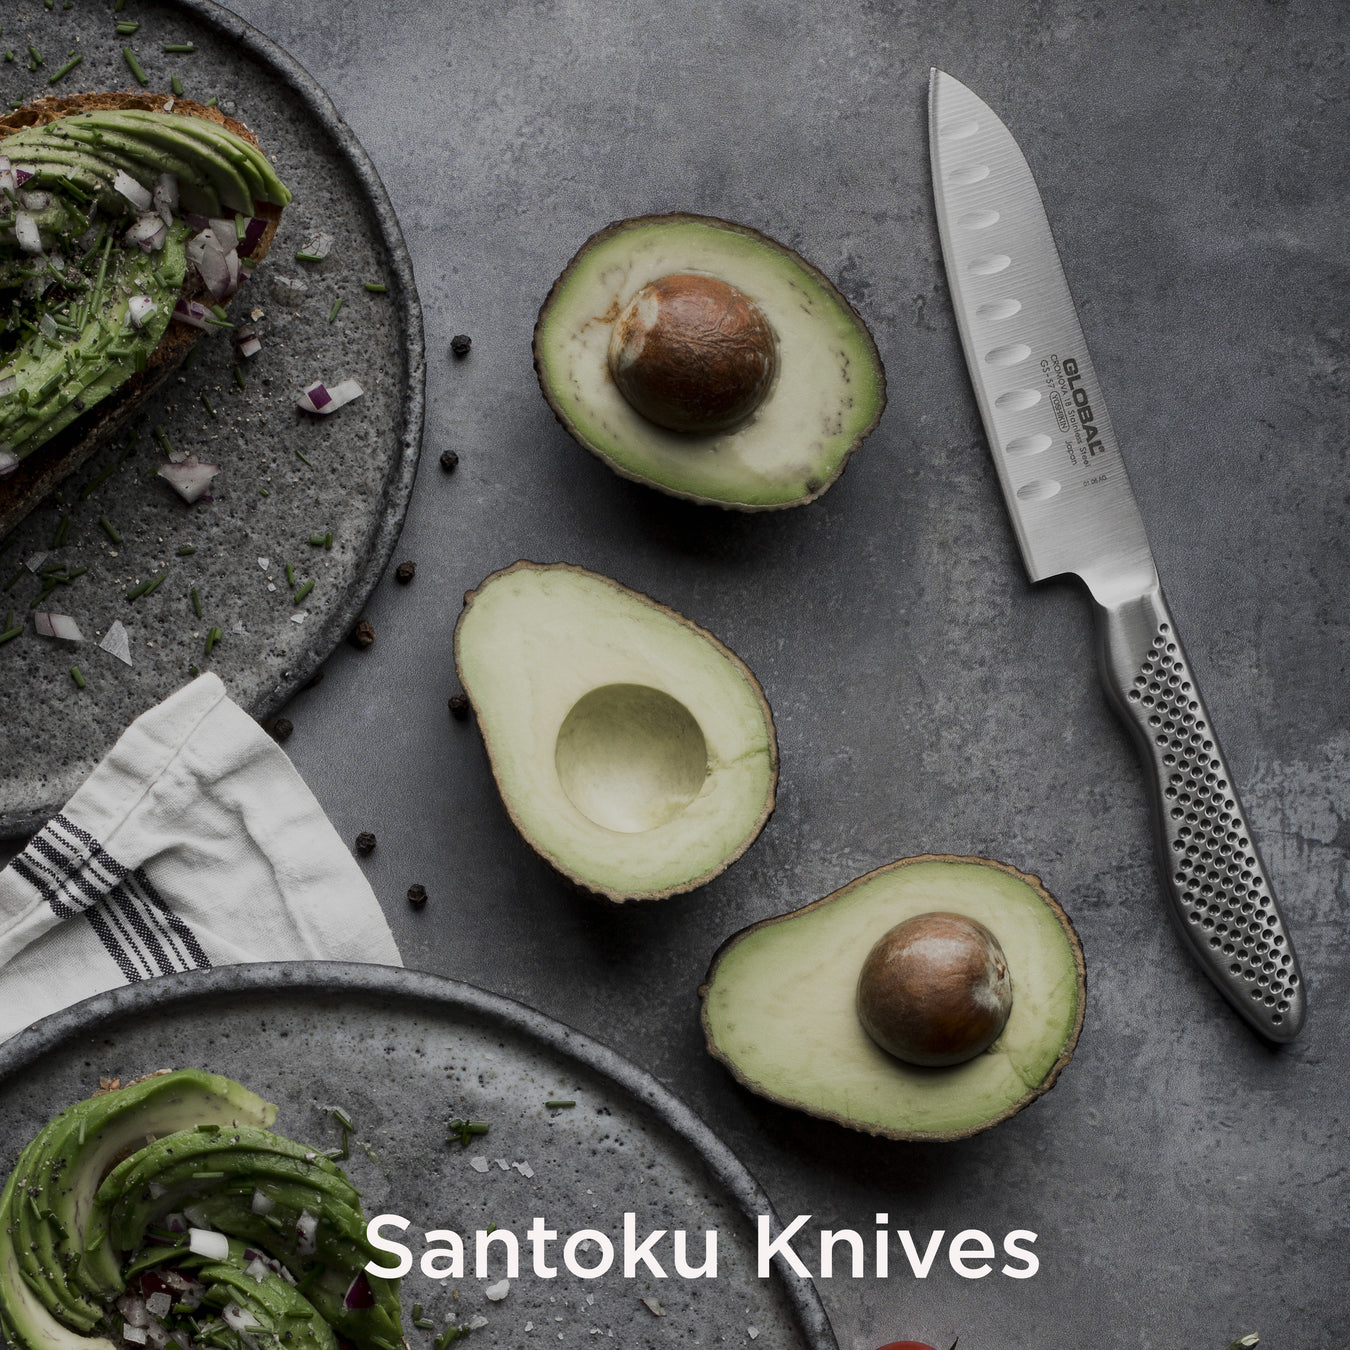 Global Santoku Knives